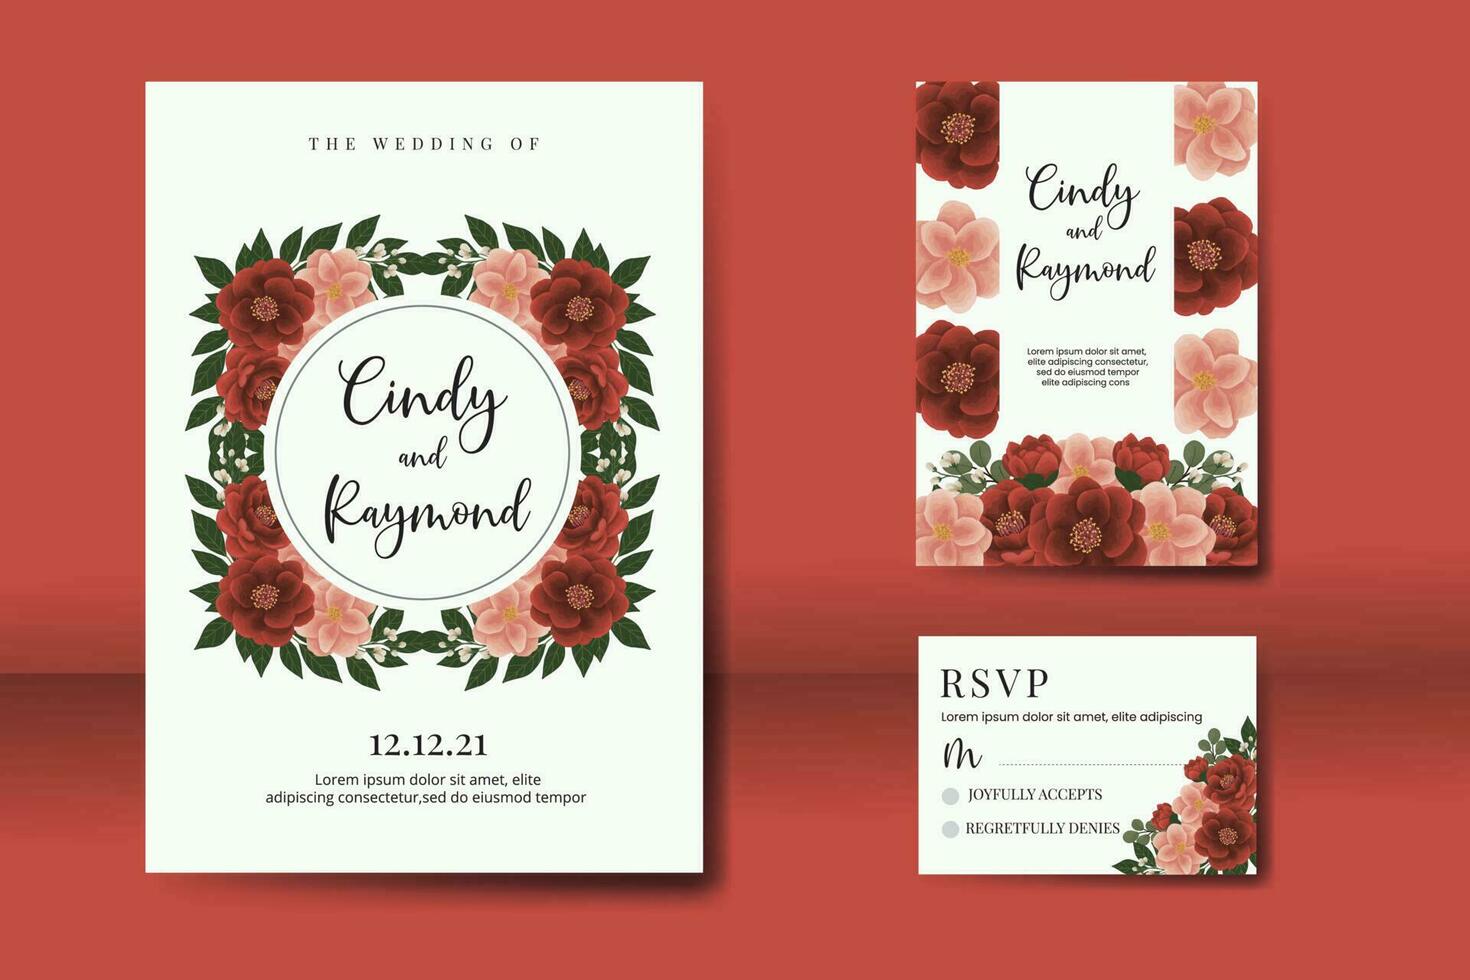 Hochzeit Einladung Rahmen Satz, Blumen- Aquarell Digital Hand gezeichnet rot Kamelie Blume Design Einladung Karte Vorlage vektor